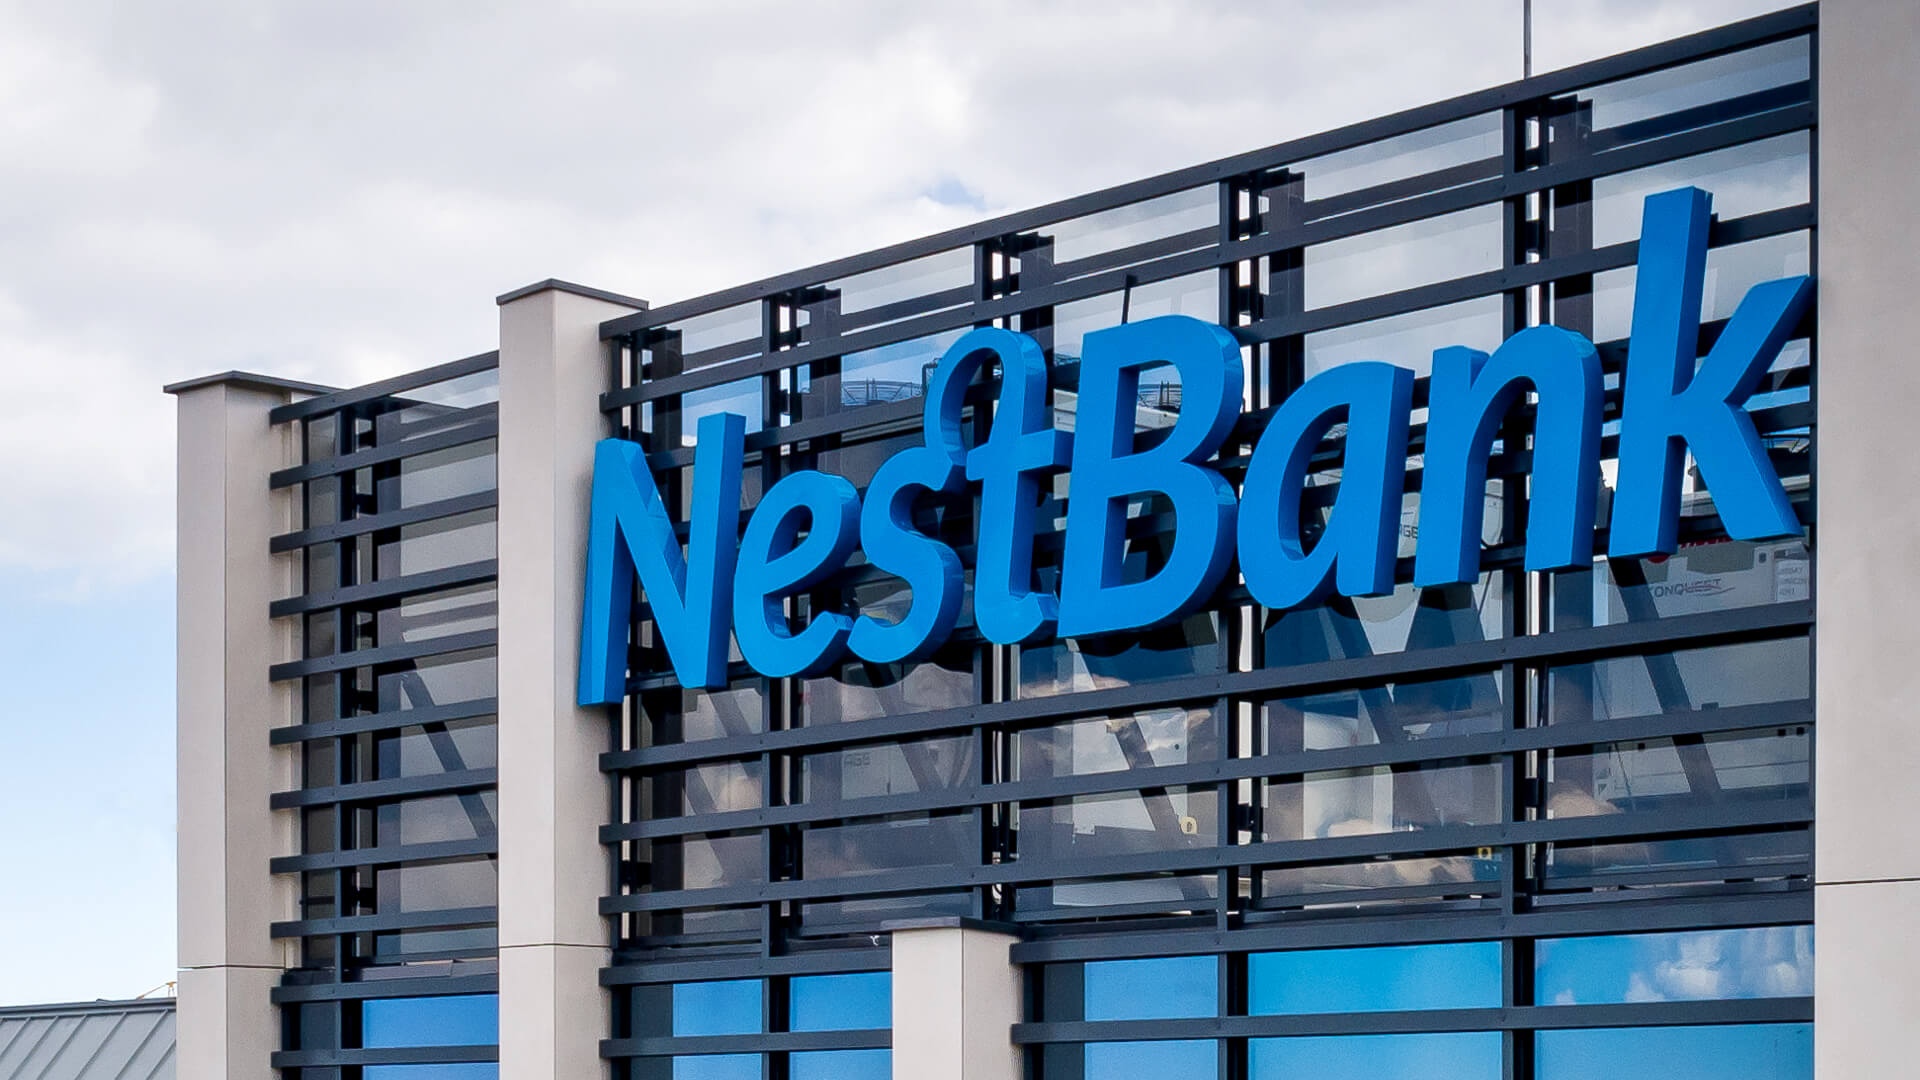 nestbank nest bank - reklama-nest-bank-litery-3d-na-budynku-litery-nest-bank